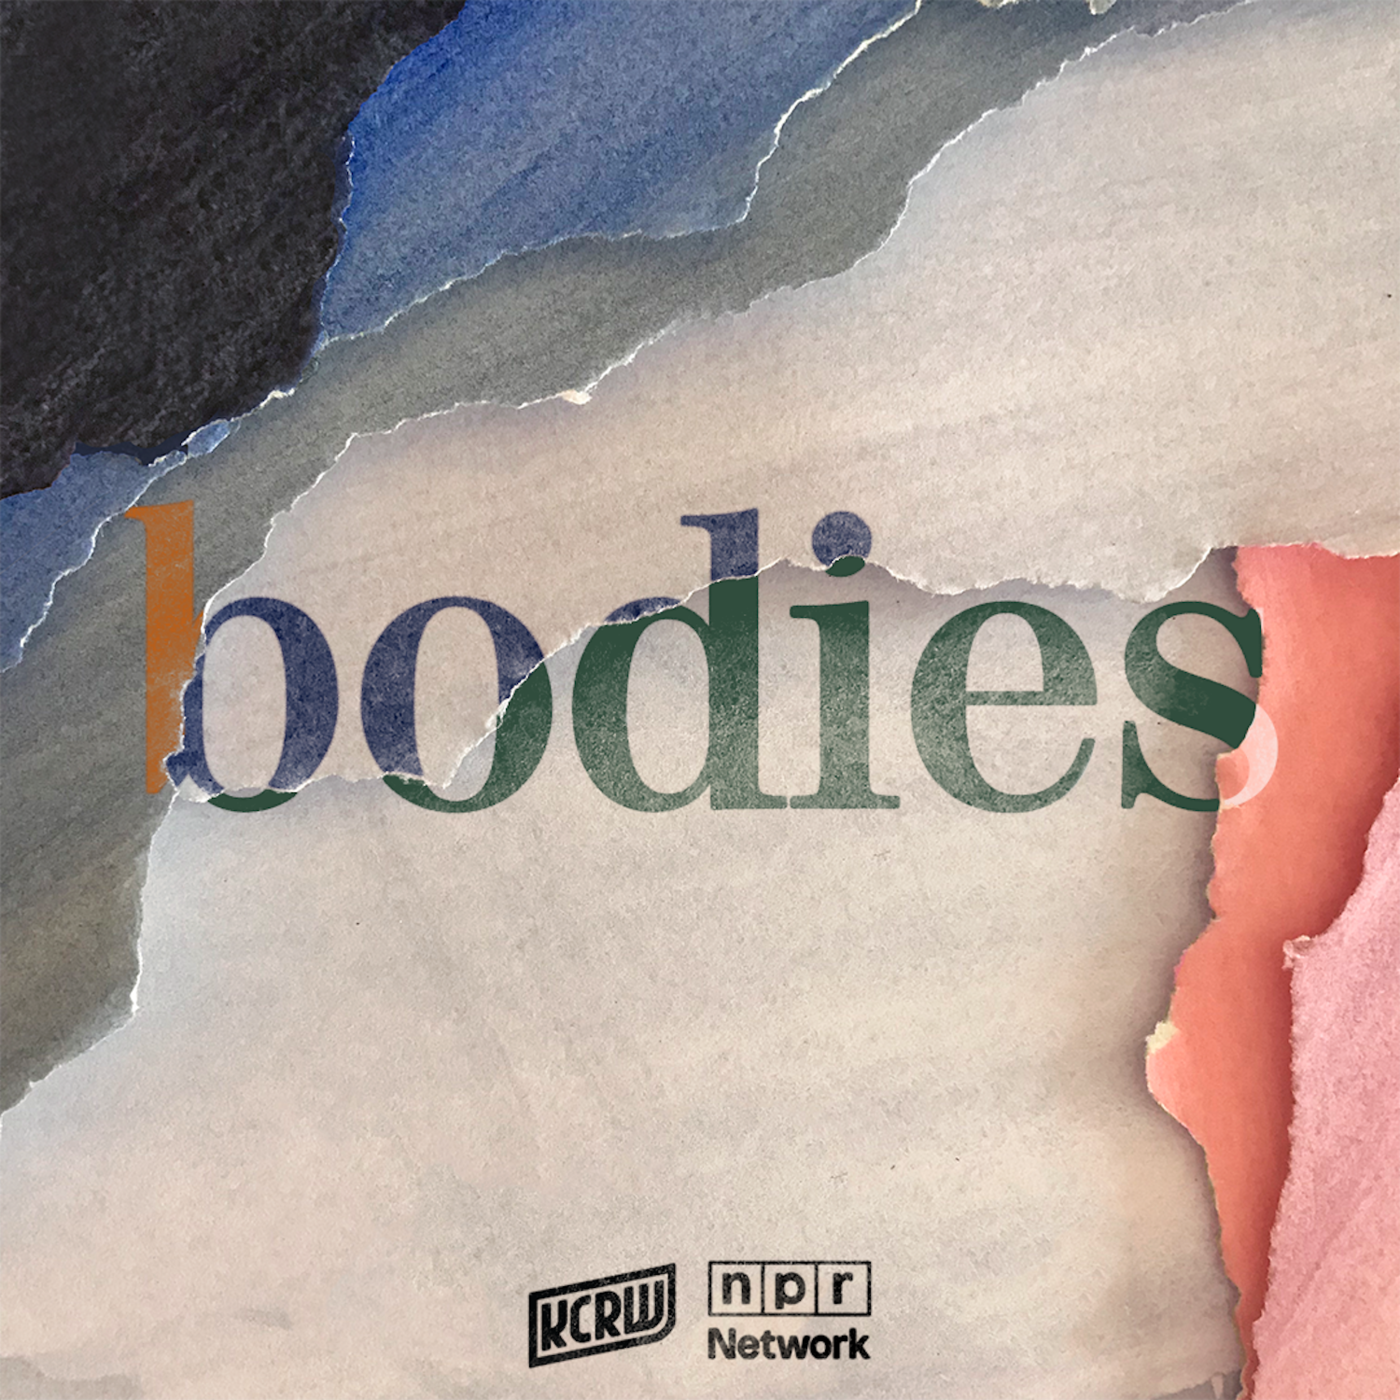 Bodies Bonus: Six Inches